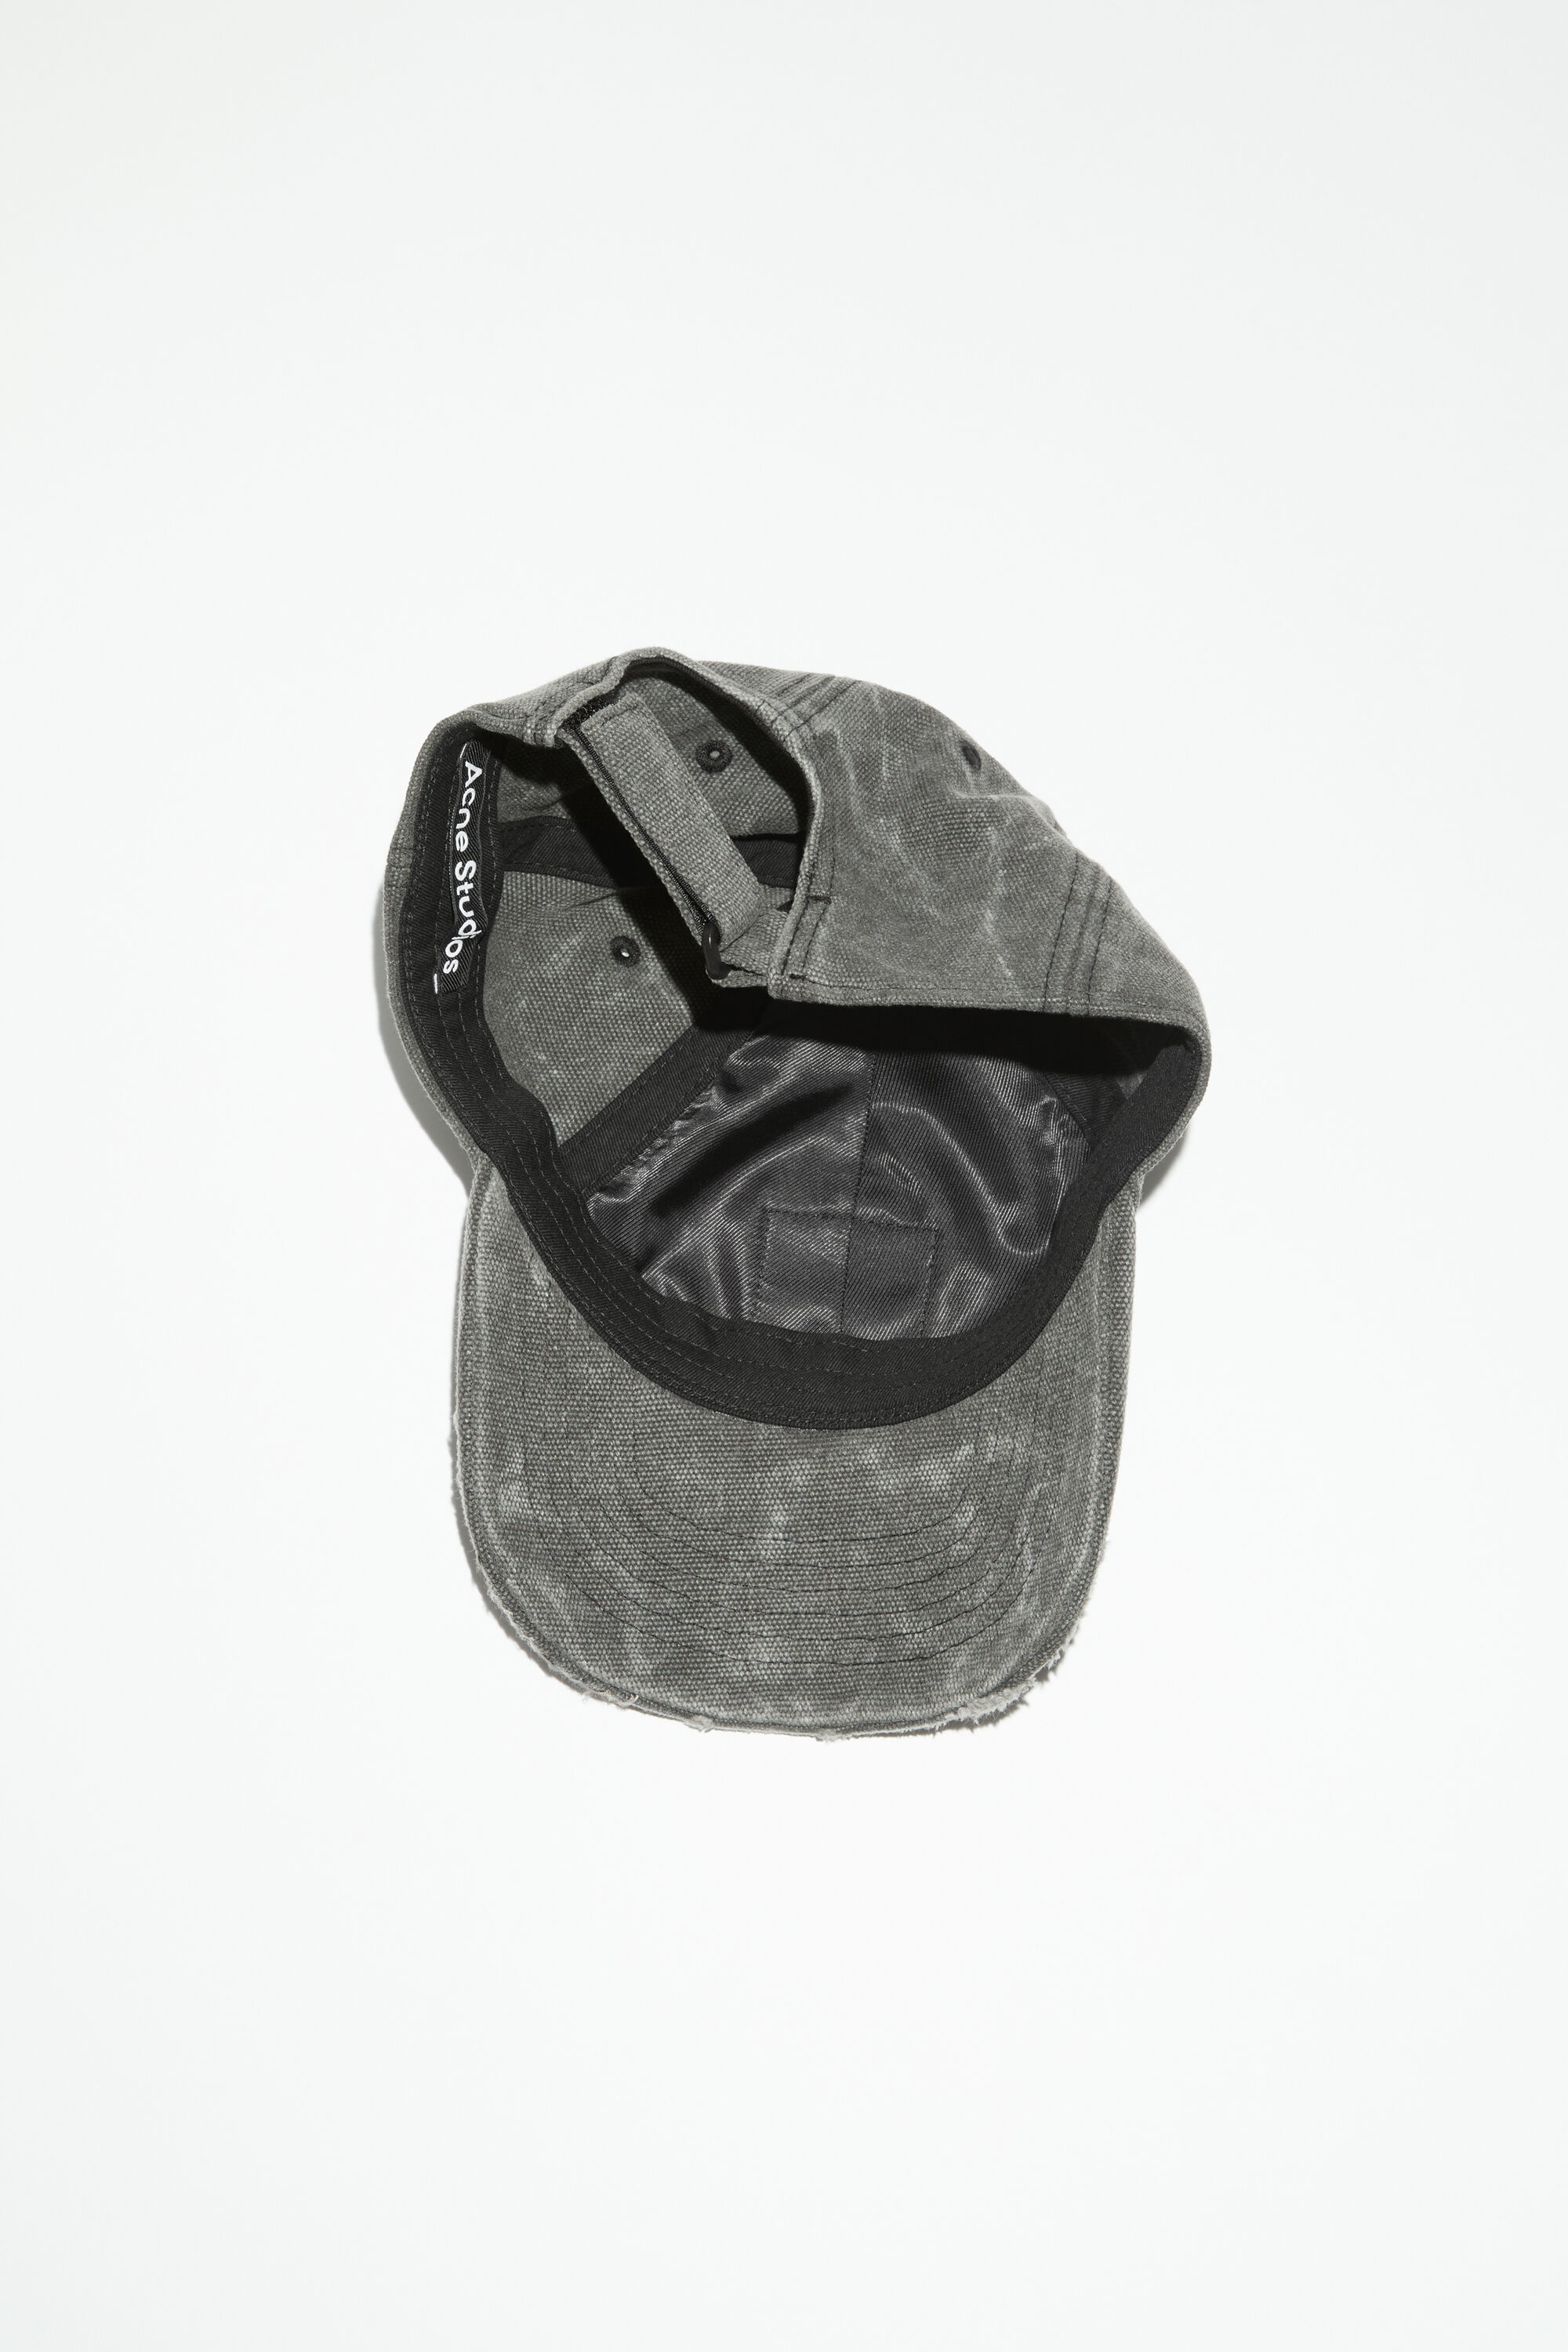 Leather Face patch cap - Carbon grey - 4